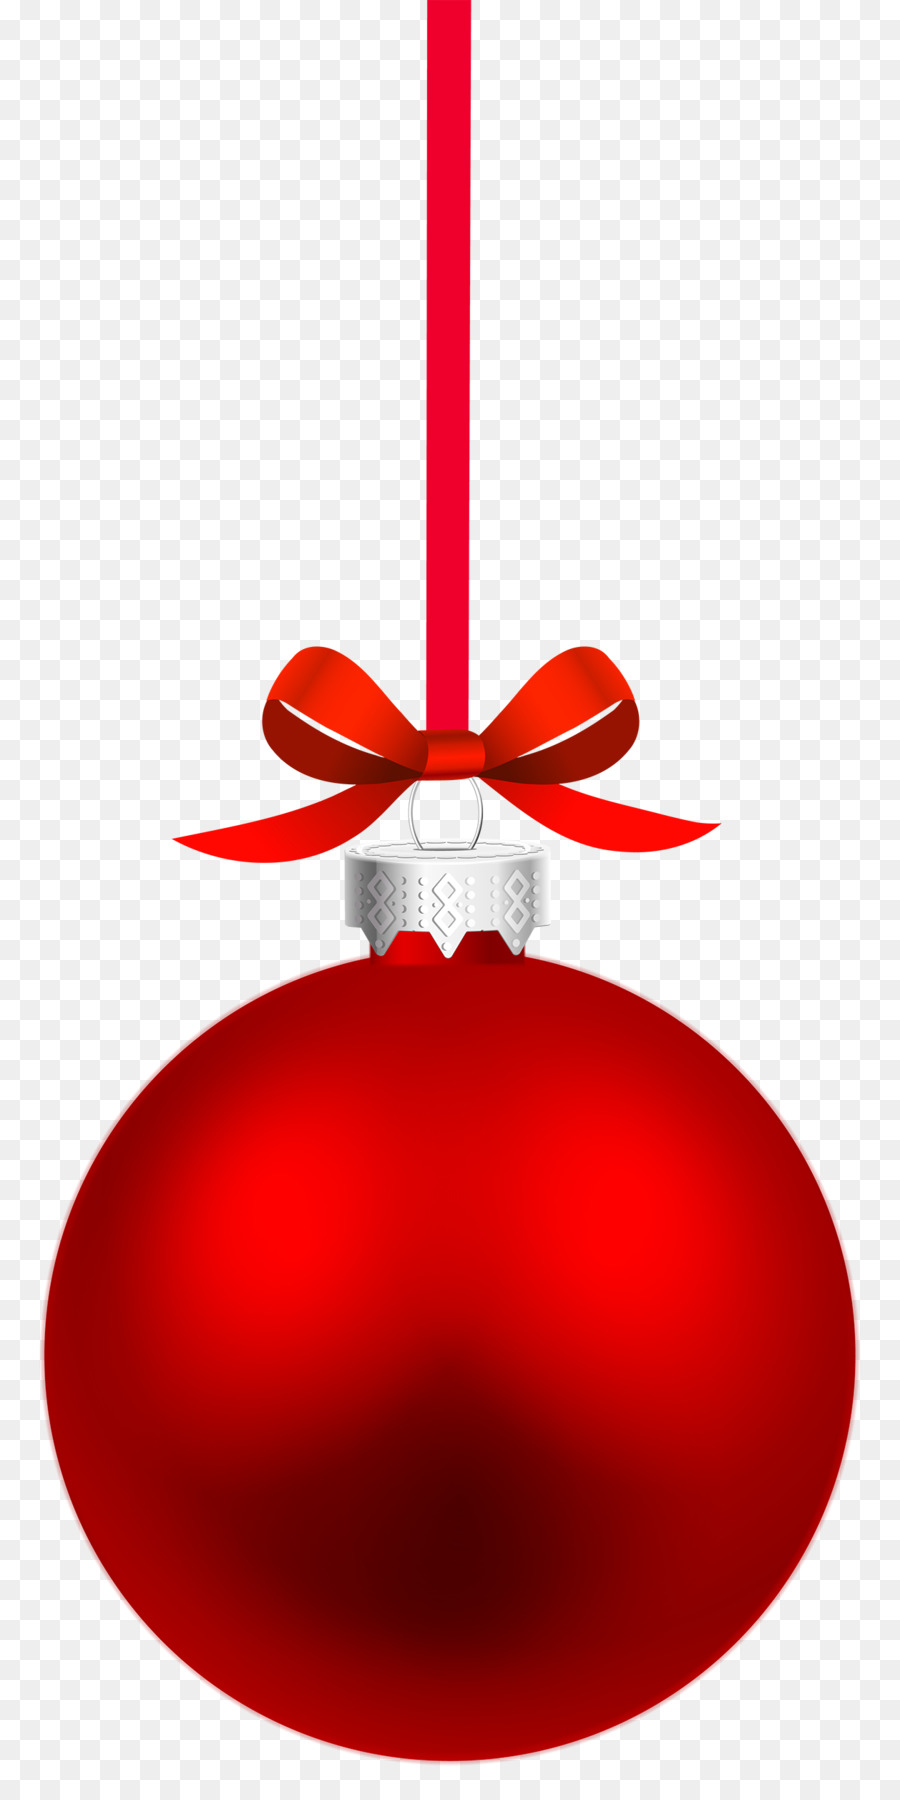 Christmas ornament Clip art - ornaments png download - 1258*2500 - Free Transparent Christmas Ornament png Download.